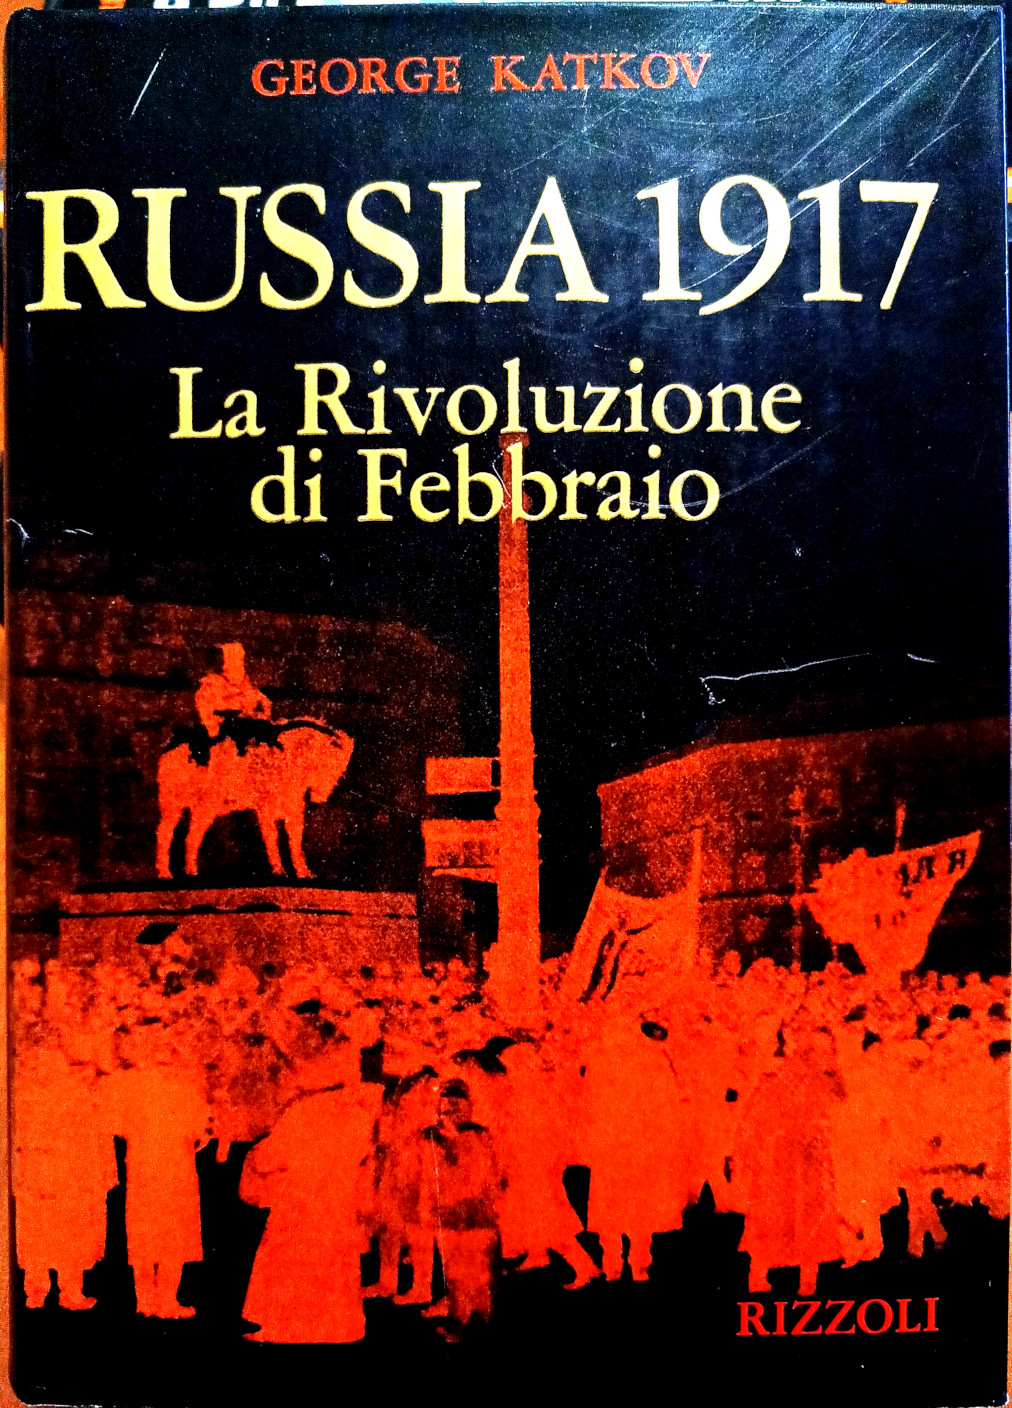 George Katkov, Russia 1917. La Rivoluzione di Febbraio, Ed. Rizzoli, 1973